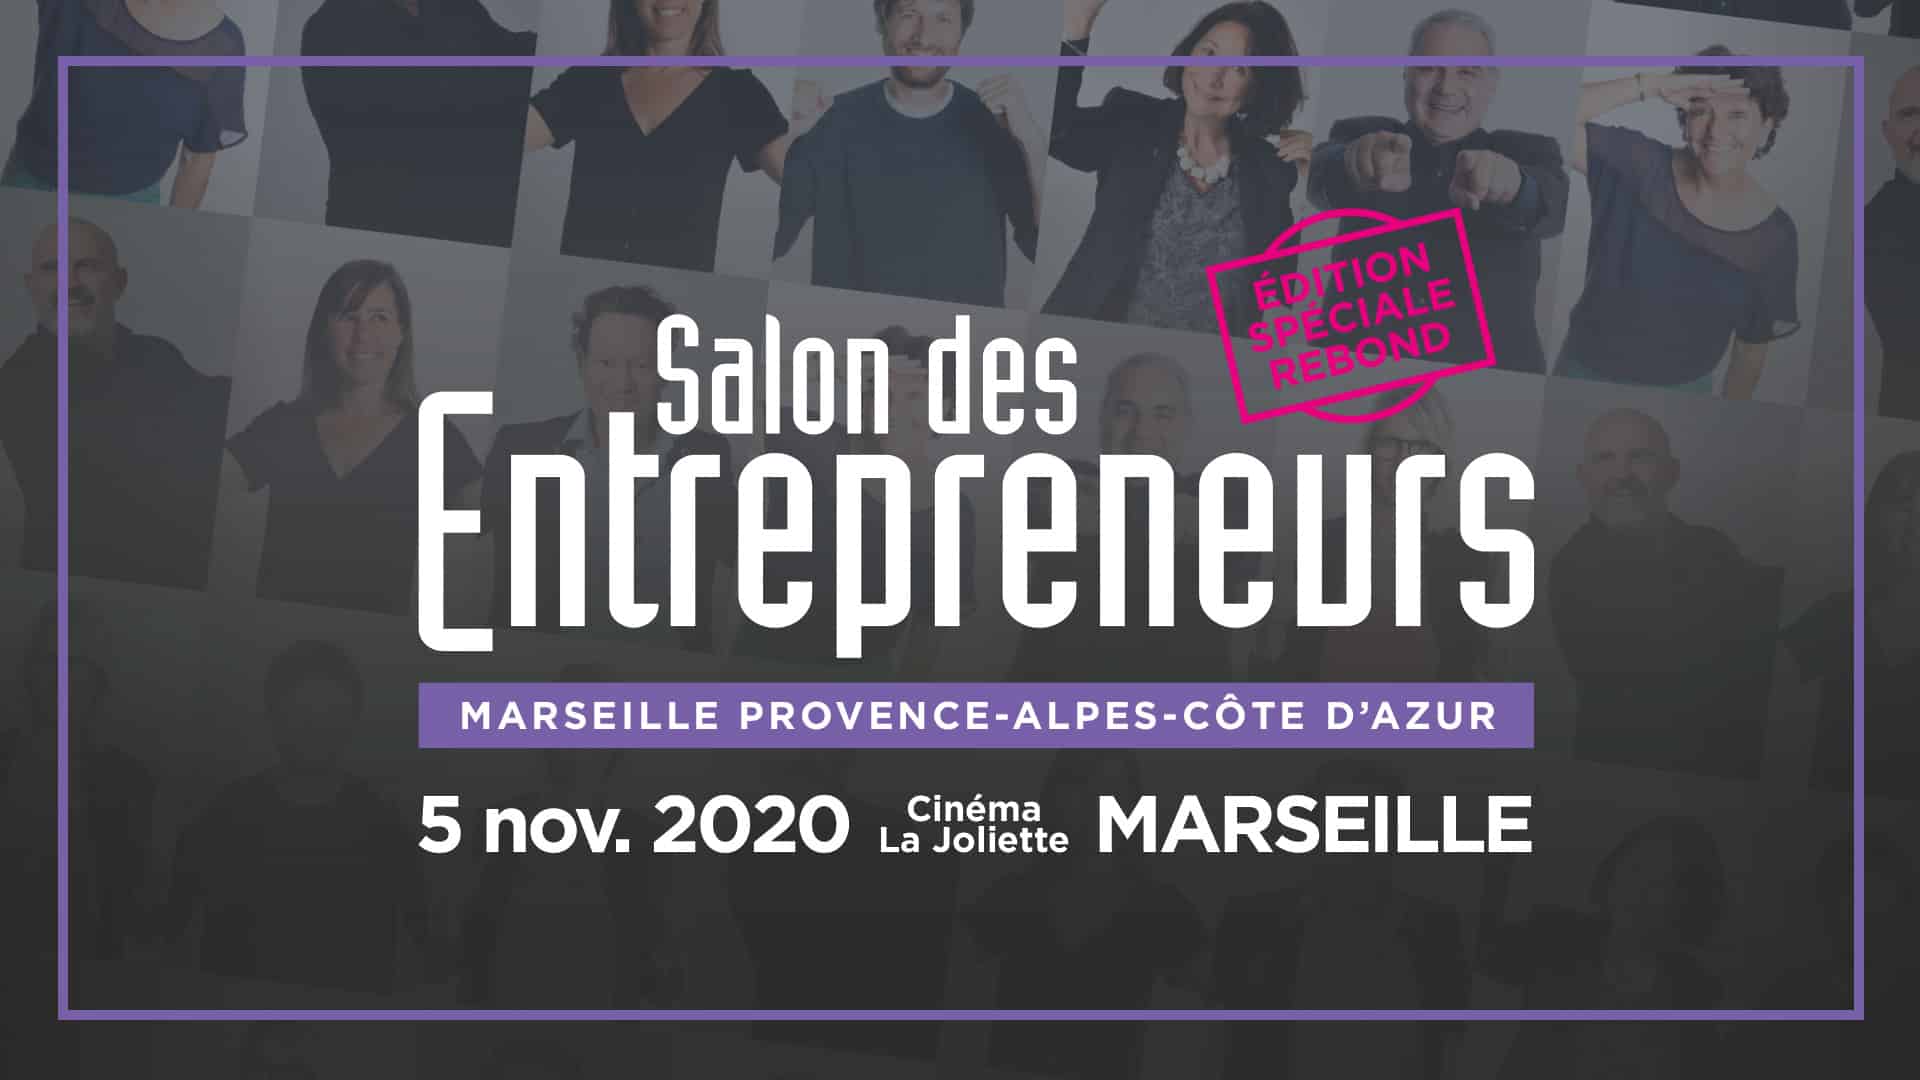 , Le Salon des Entrepreneurs revient à Marseille pour une édition &#8220;Spéciale Rebond&#8221;, Made in Marseille